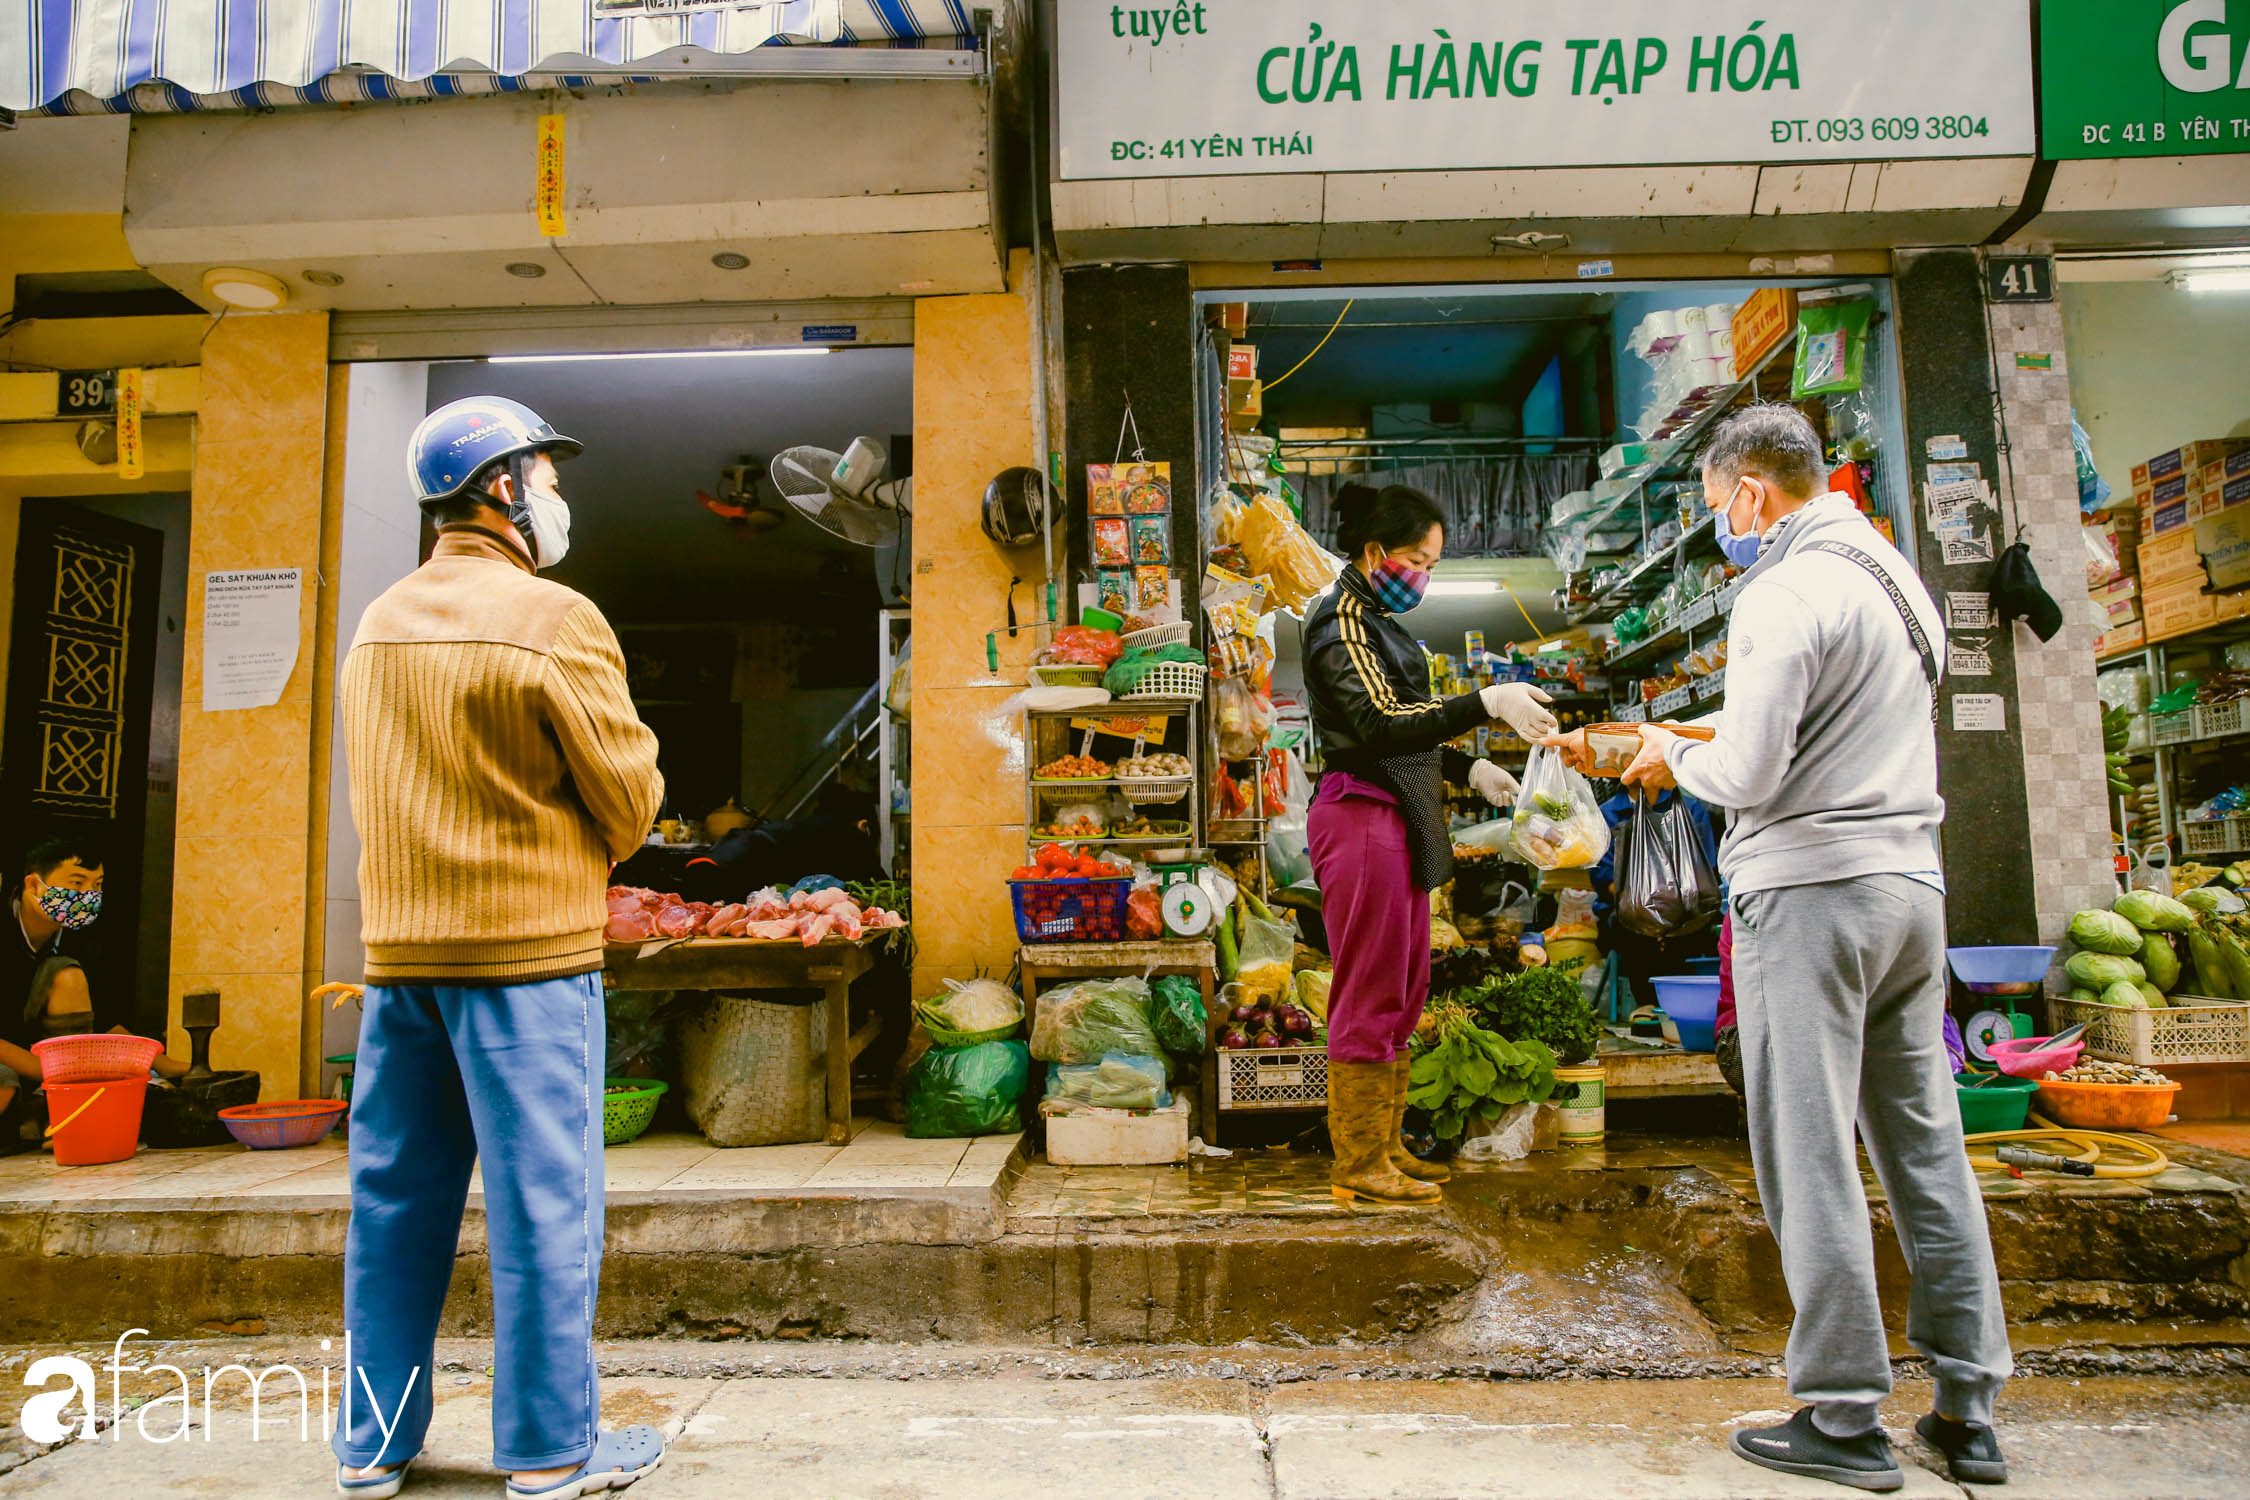 Khu chợ trong phố cổ Hà Nội kẻ vạch giãn cách 2 mét, chỉ bán hàng cho những người chịu đo thân nhiệt, đeo khẩu trang - Ảnh 8.